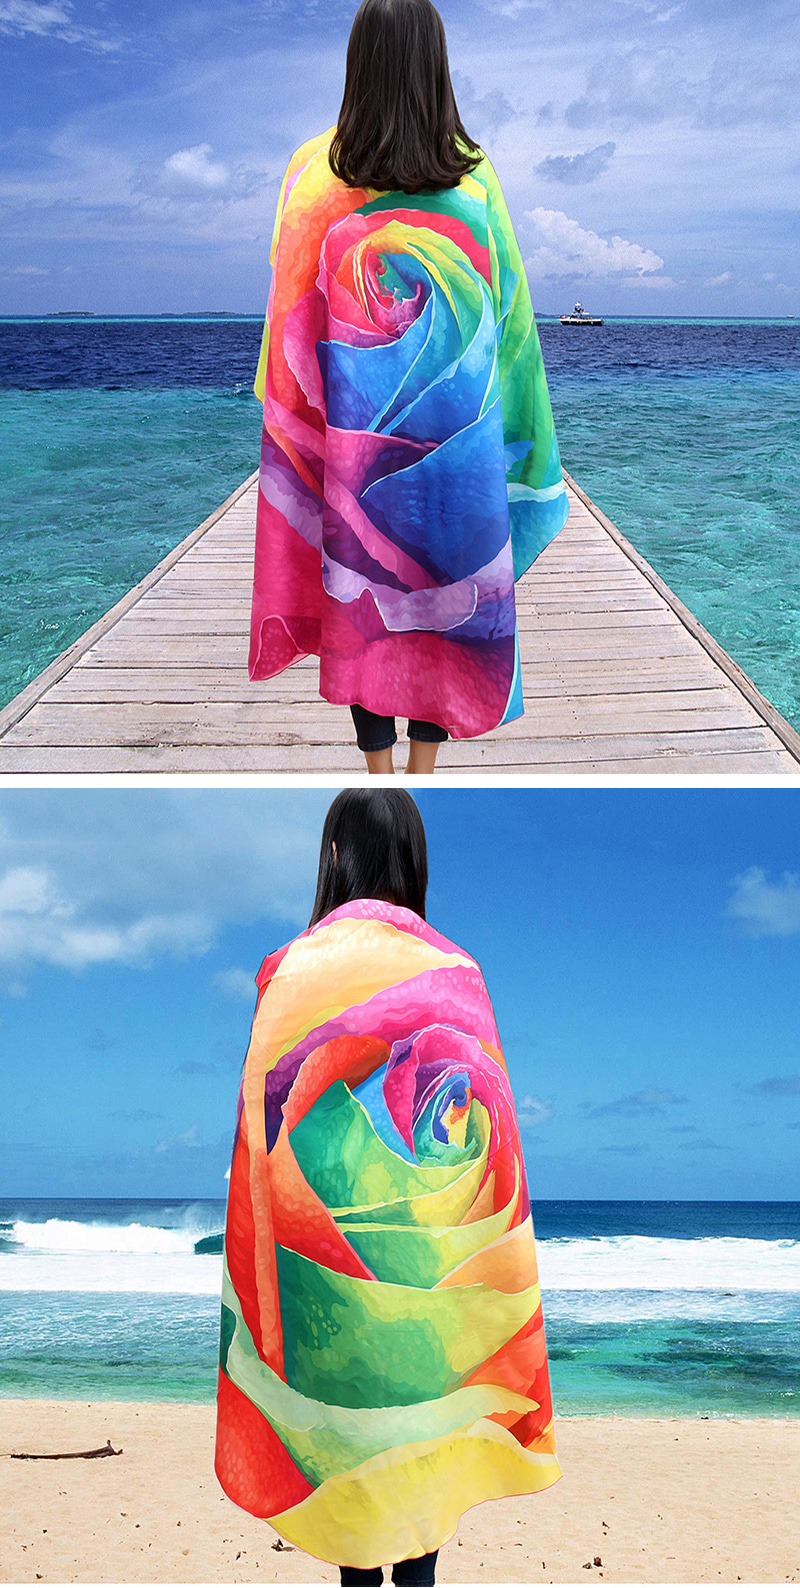 Honana-WX-89-147cm-3D-Simulation-Rose-Beach-Towel-Mat-Romantic-Women-Shawl-Bed-Sheet-Tapestry-1139313-1